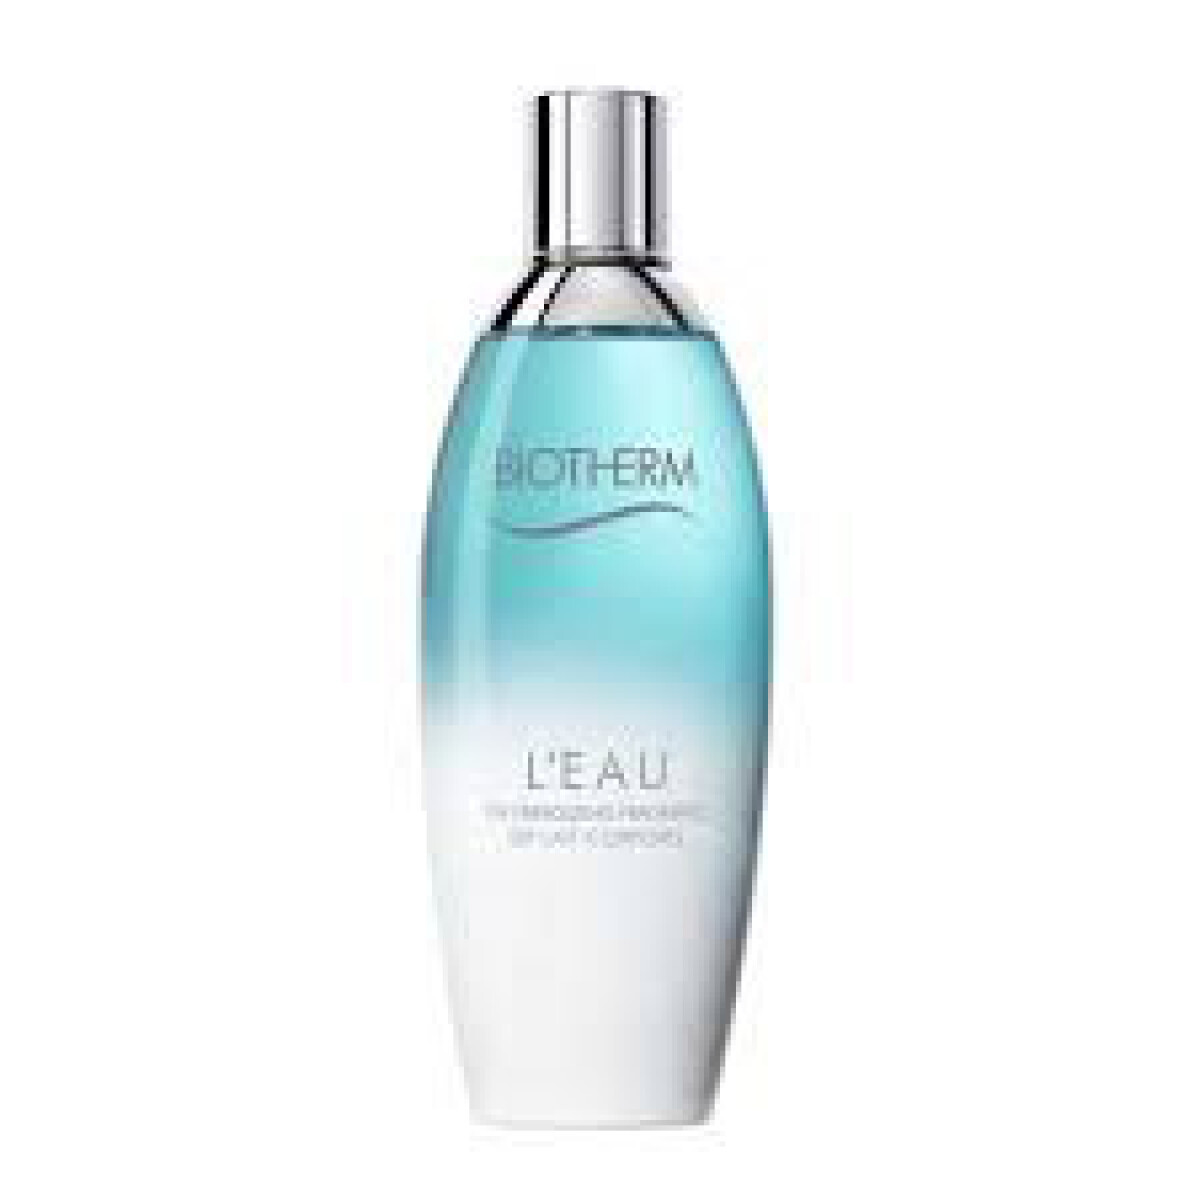 Perfume Biotherm L'Eau Edt 100 ml 